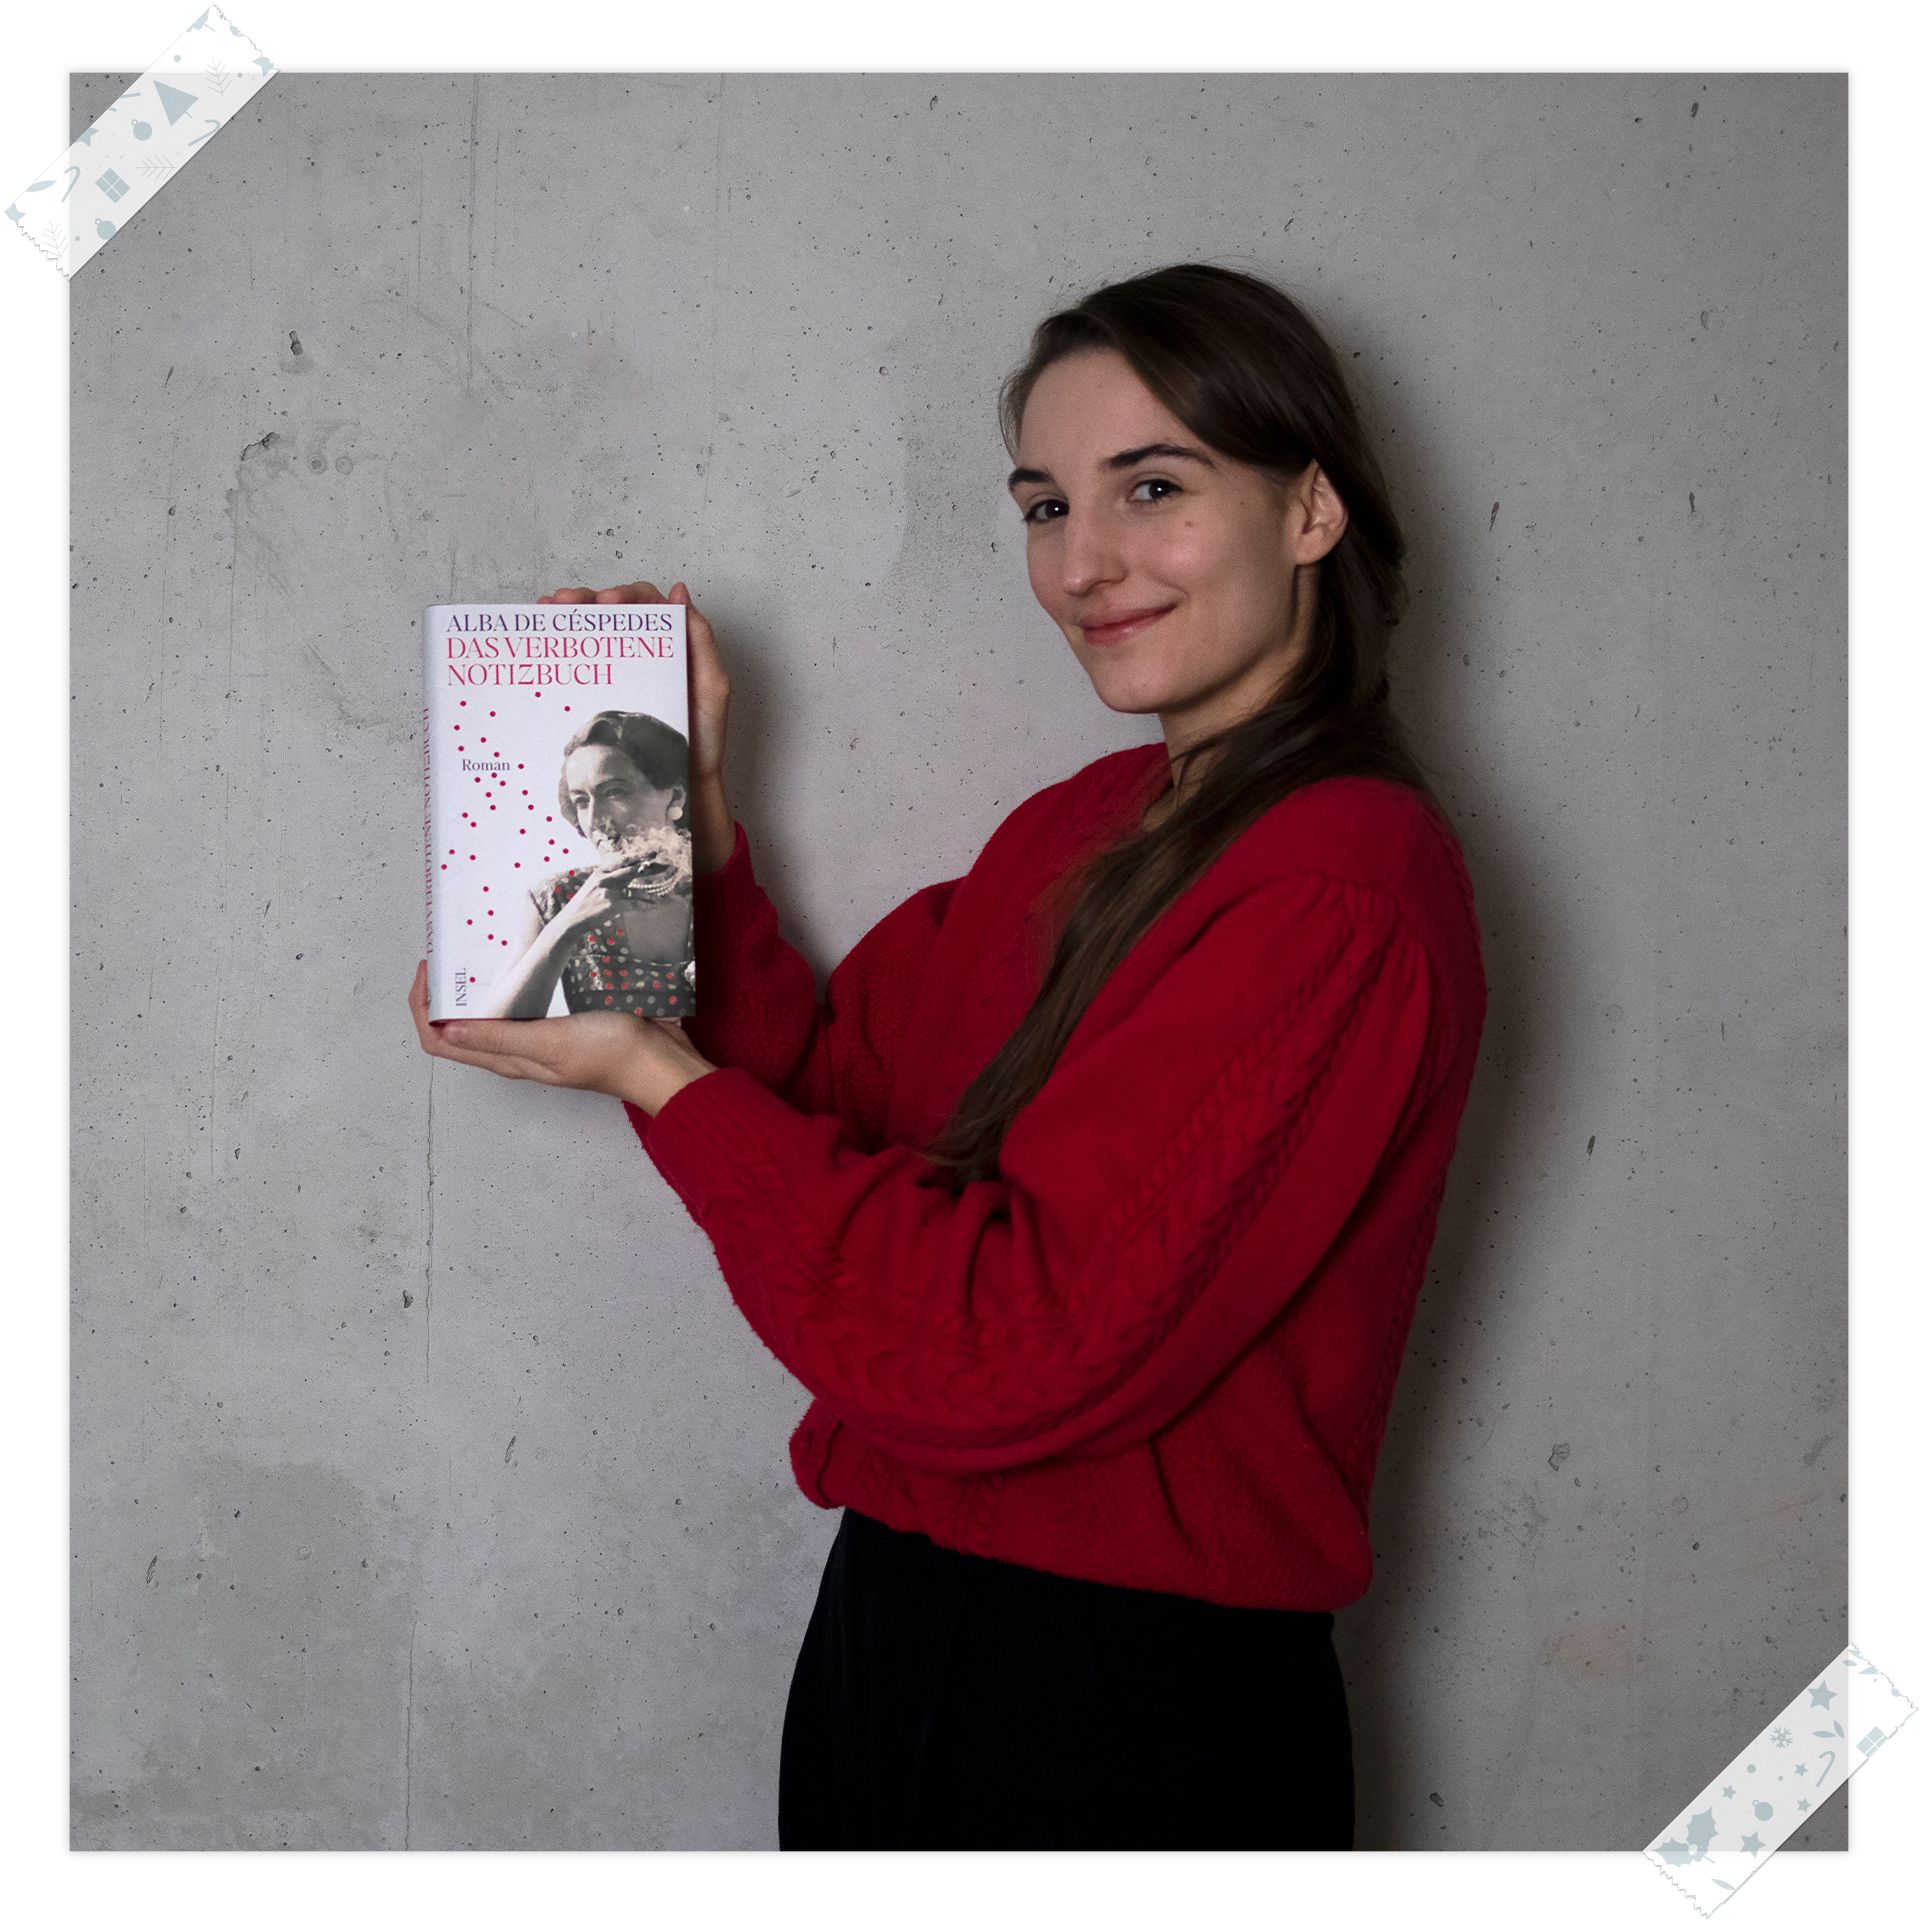 Emilie Sievert empfiehlt »Das verbotene Notizbuch« von Alba De Céspedes